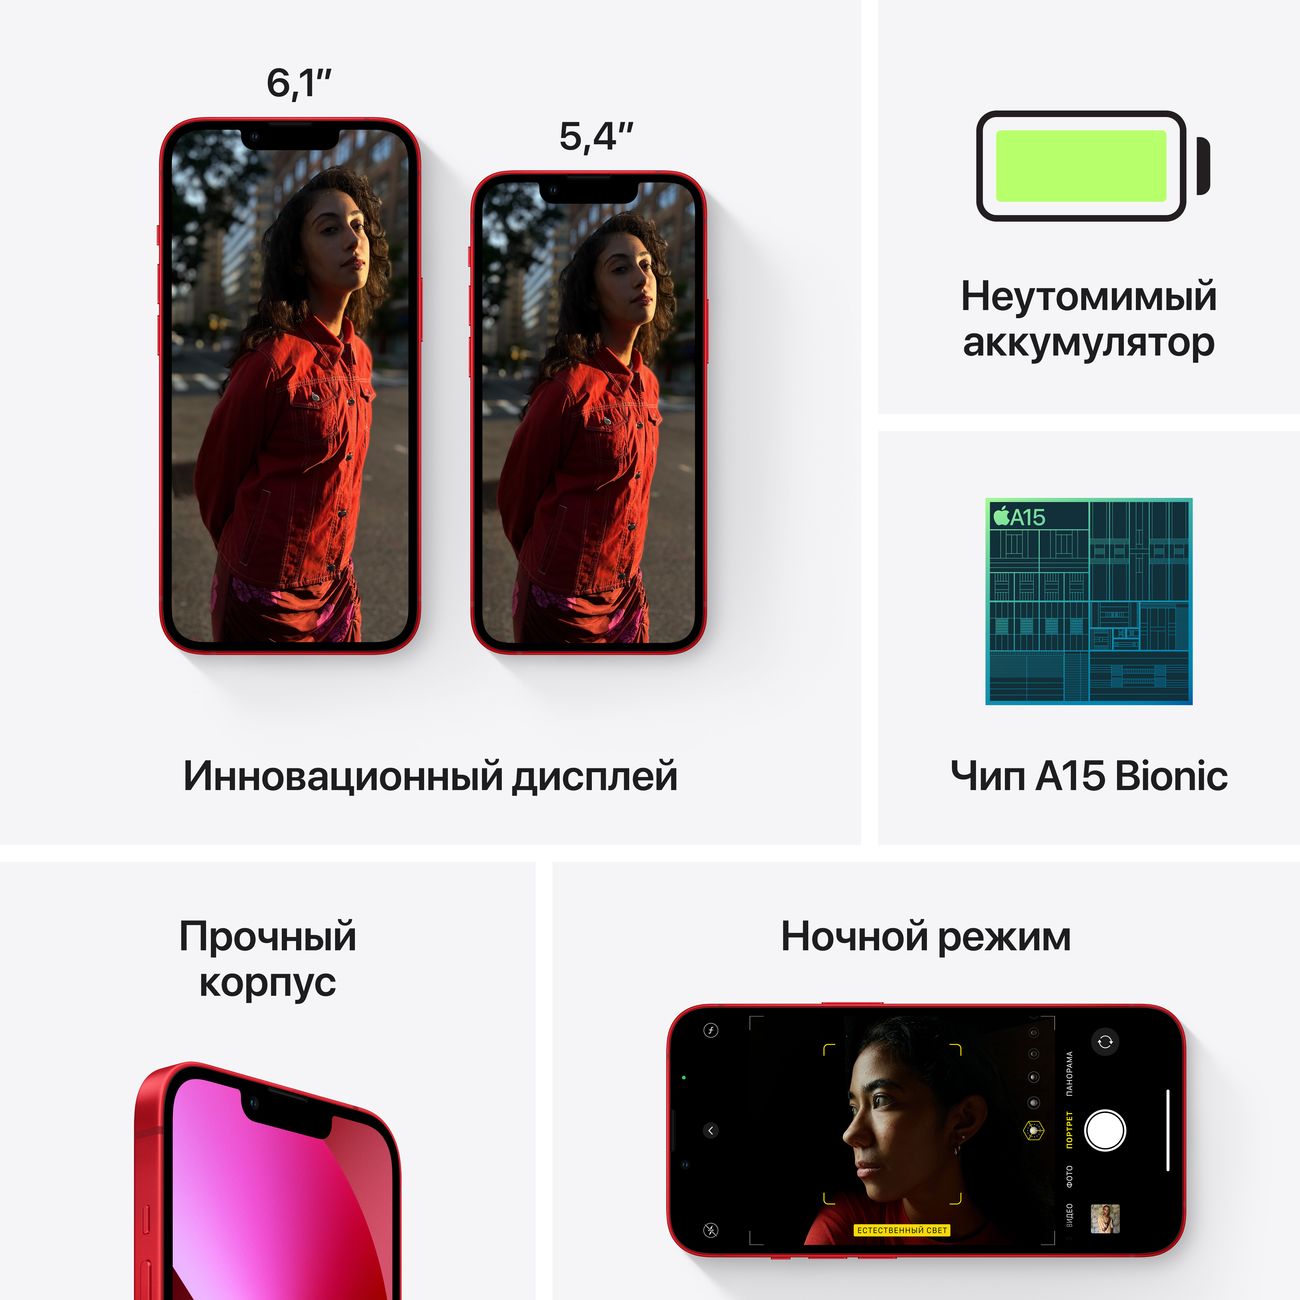 Купить смартфон apple iphone 13 mini 128gb pink Apple iPhone 13 mini в официальном магазине Apple, Samsung, Xiaomi. iPixel.ru Купить, заказ, кредит, рассрочка, отзывы,  характеристики, цена,  фотографии, в подарок.